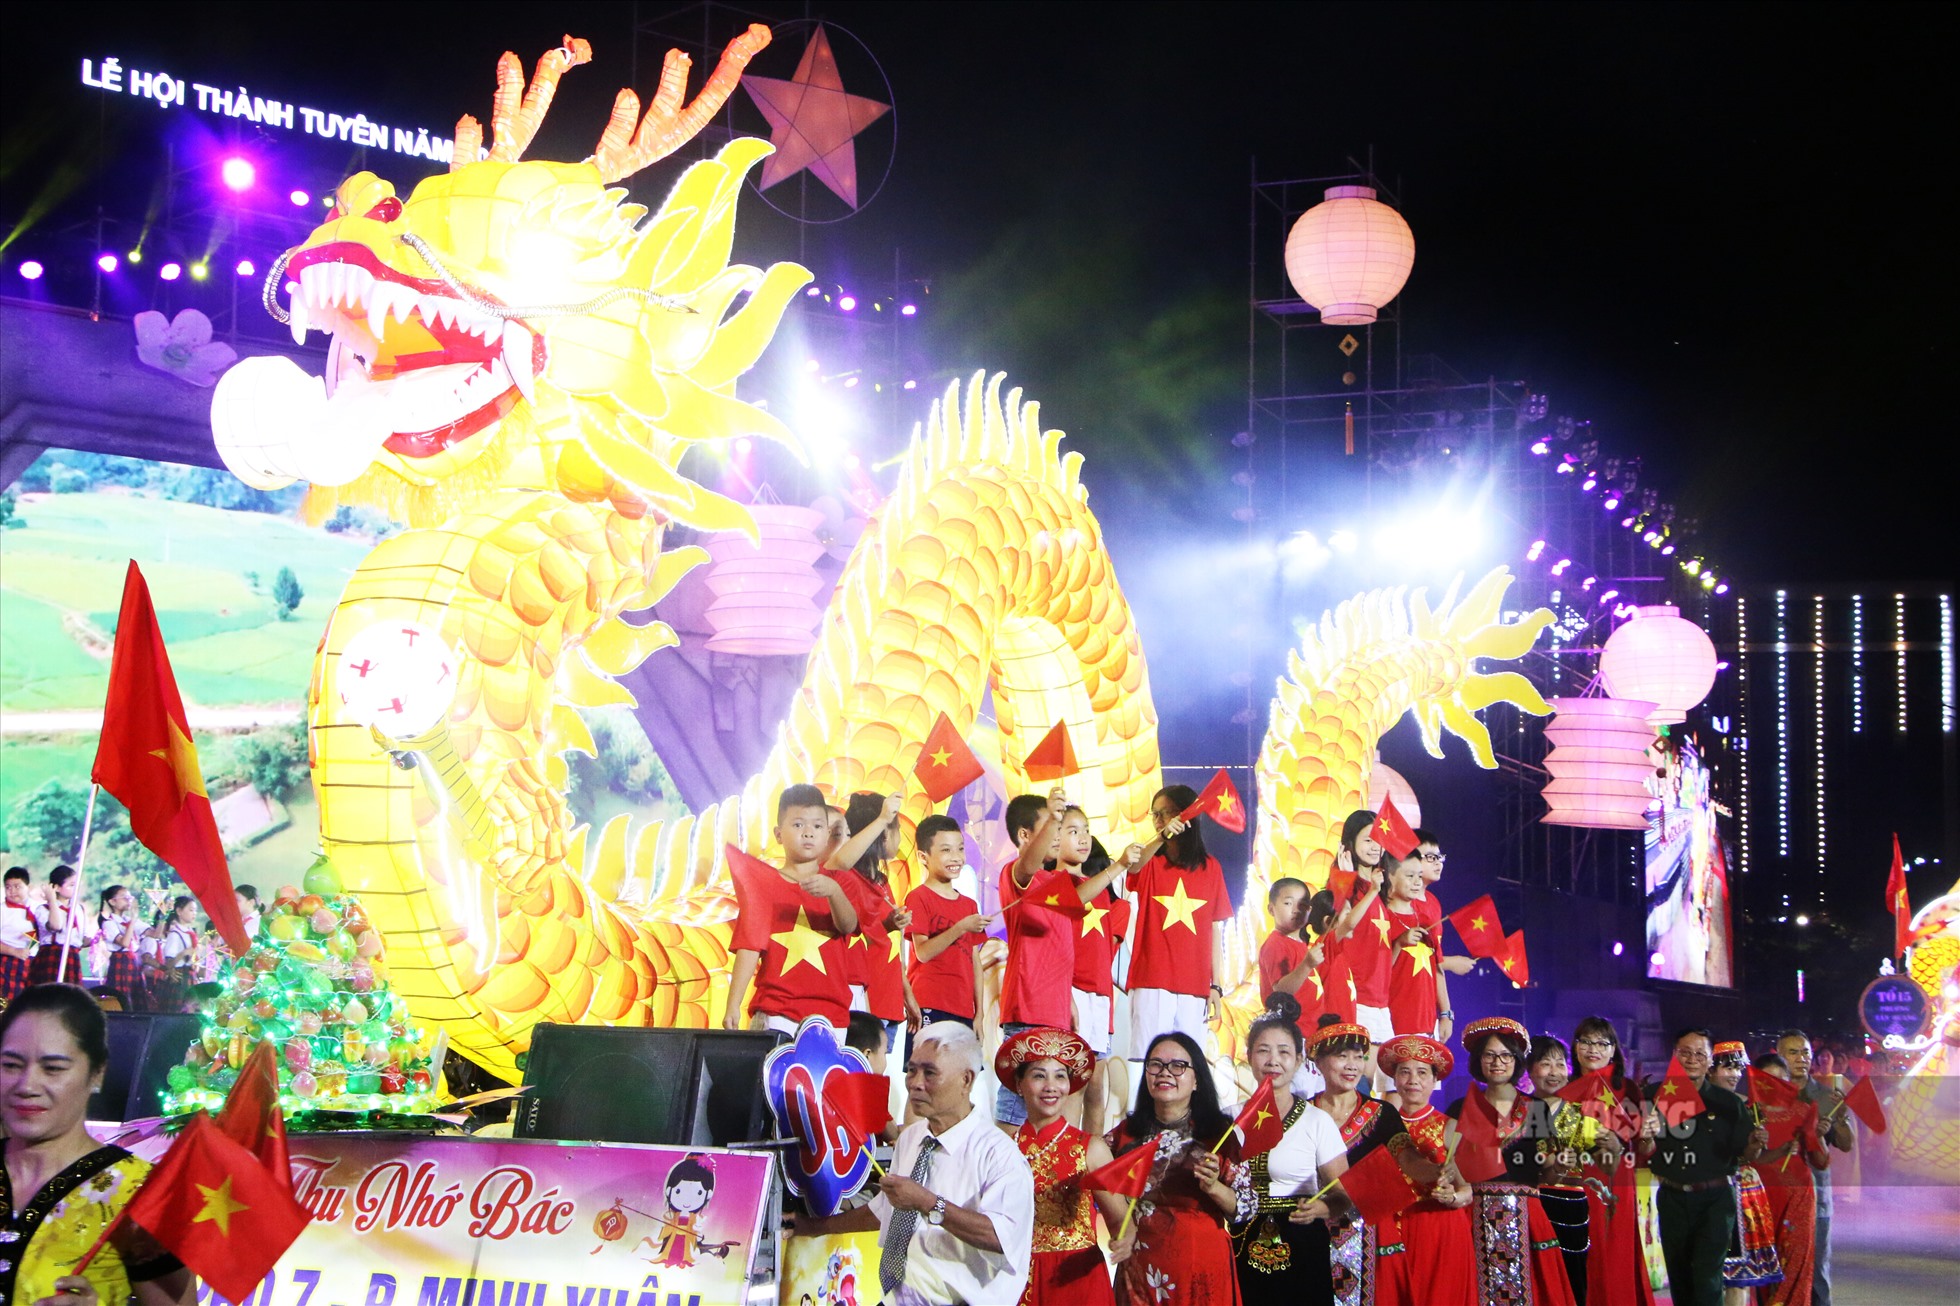 Sau 2 năm gián đoạn vì dịch COVID-19, Lễ hội Thành Tuyên chính thức được tổ chức trở lại vào tối 3 và 4.9 với nhiều mô hình đèn Trung thu khổng lồ, rực rỡ sắc màu và được biết đến như một nét đặc trưng, riêng có của tỉnh Tuyên Quang.